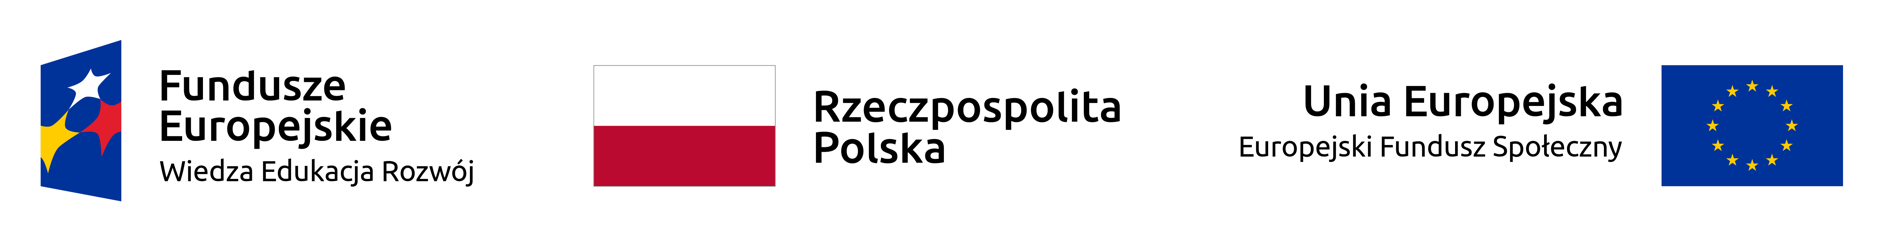 Grafika od lewej: logo Fudusze Europejskie Wiedza Edukacja Rozwój, flaga narodowa Polski, napis Rzeczpospolita Polska, napis Unia Europejska Europejski Fundusz Społeczny, flaga Unii Europejskiej